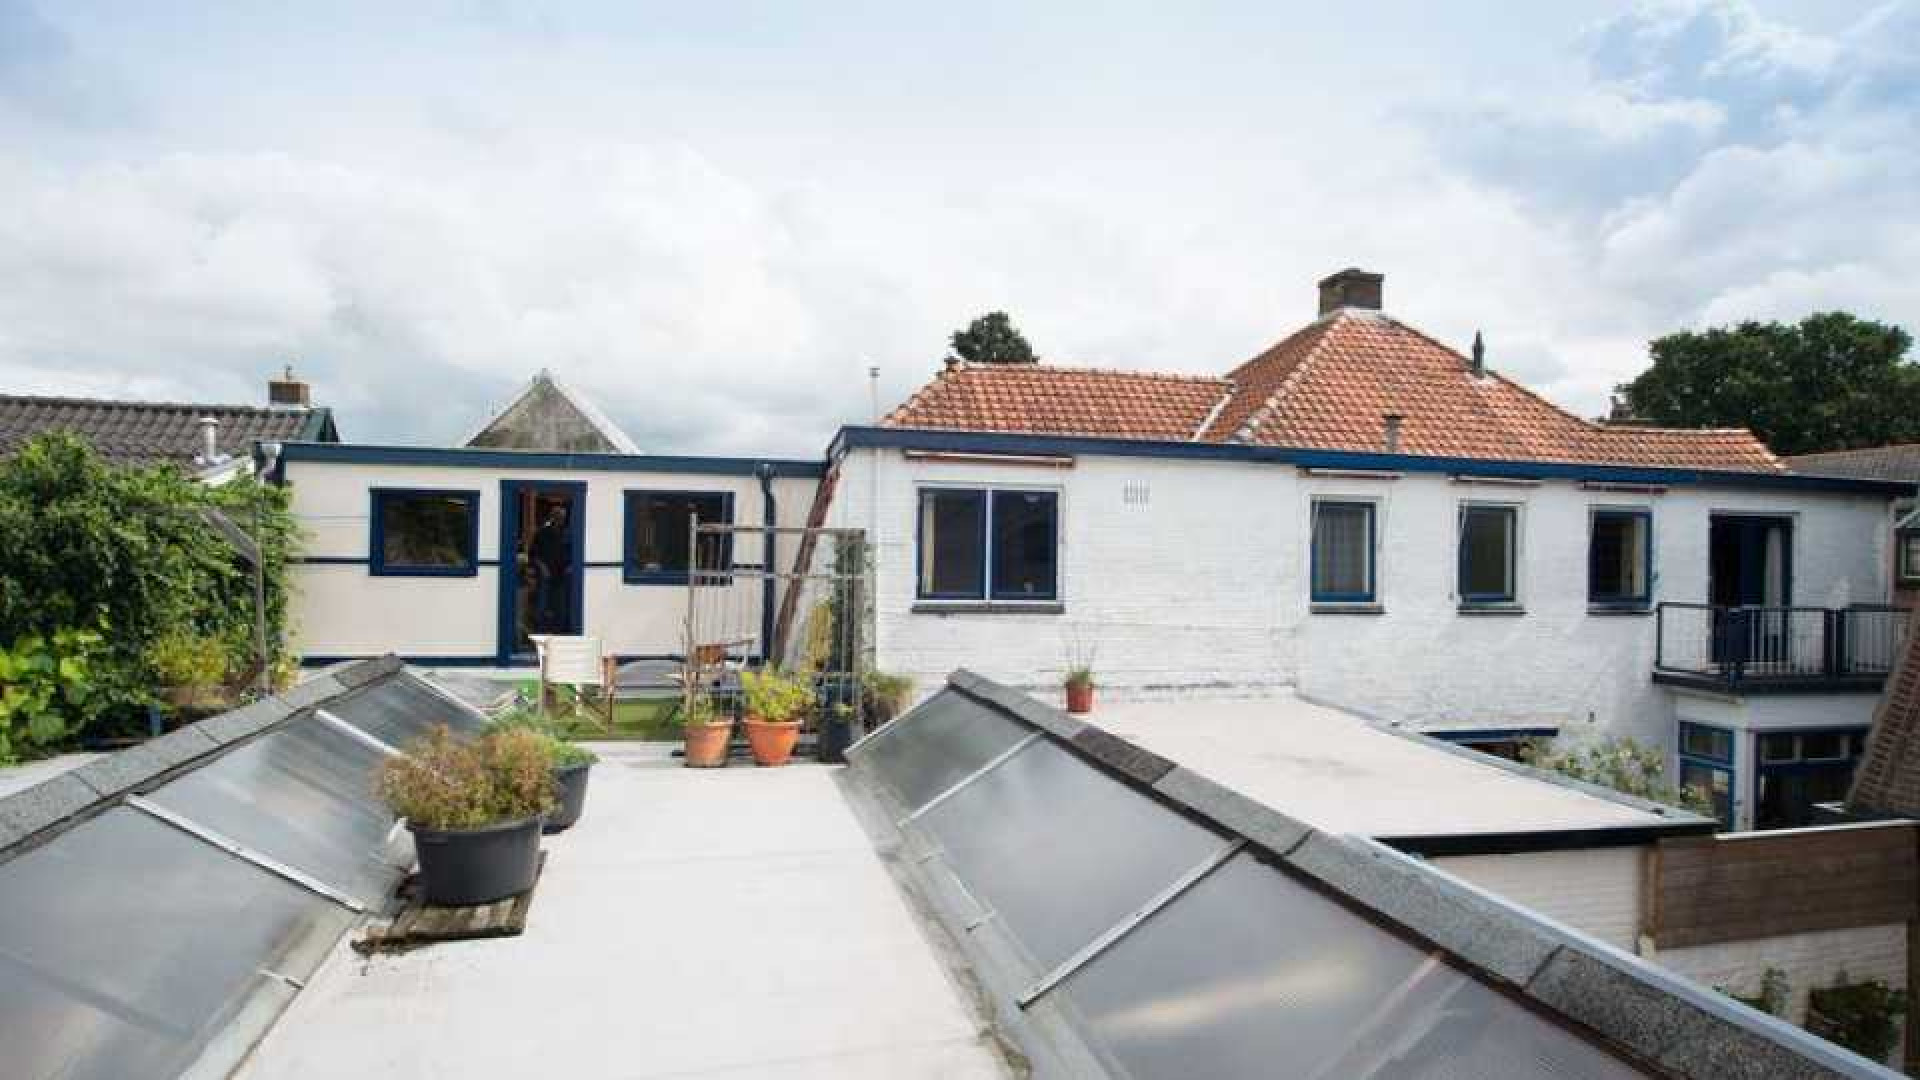 Manuela Kemp koopt vrijstaand huis met groot atelier in Hilversum. Zie foto's 13